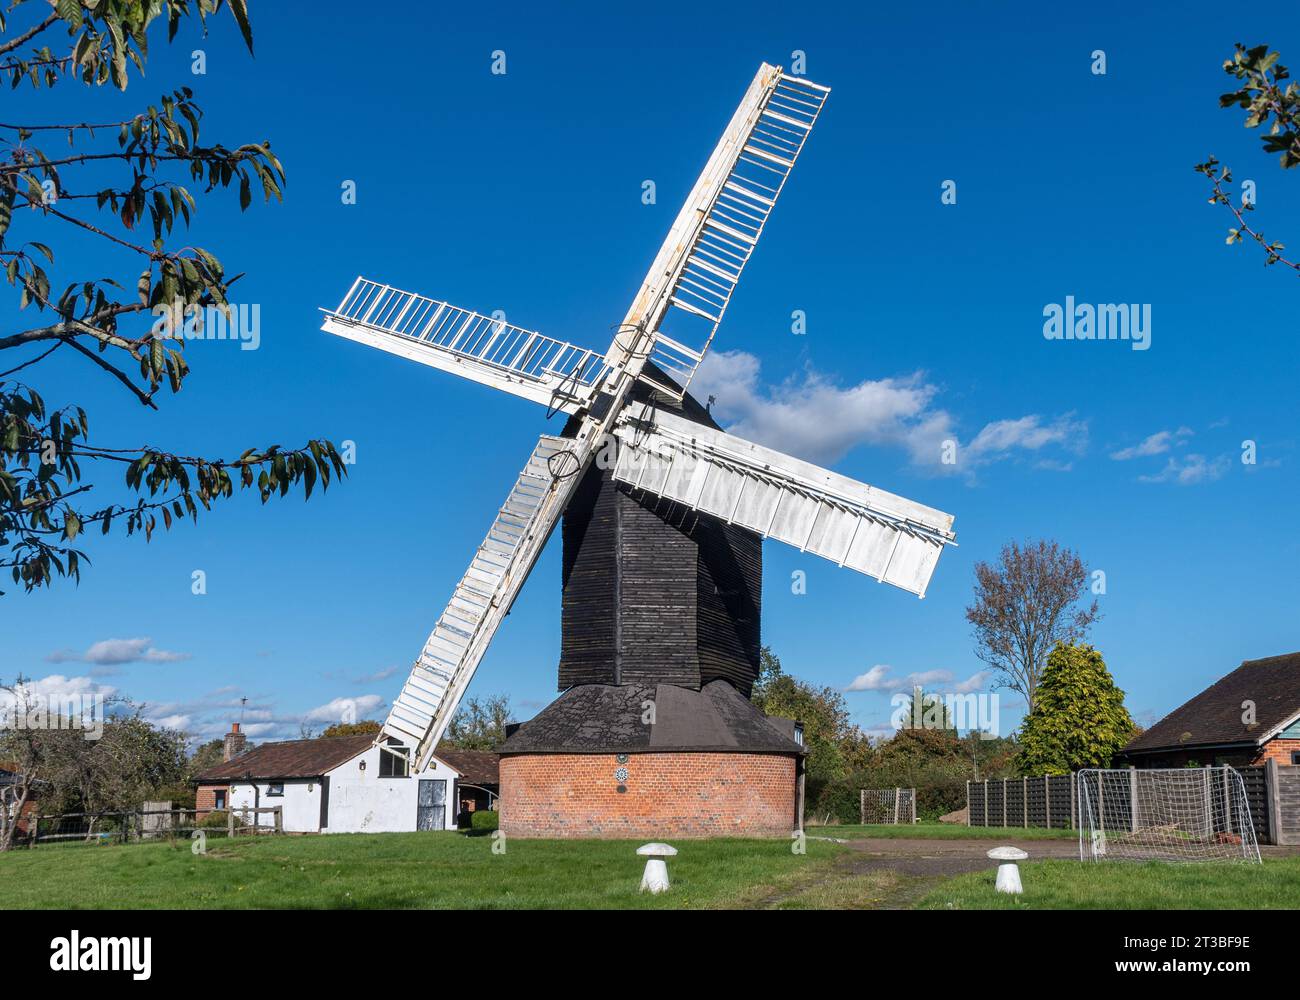 Outwood Windmill, un moulin historique construit en 1665 et un bâtiment classé de grade I, Surrey, Angleterre, Royaume-Uni Banque D'Images